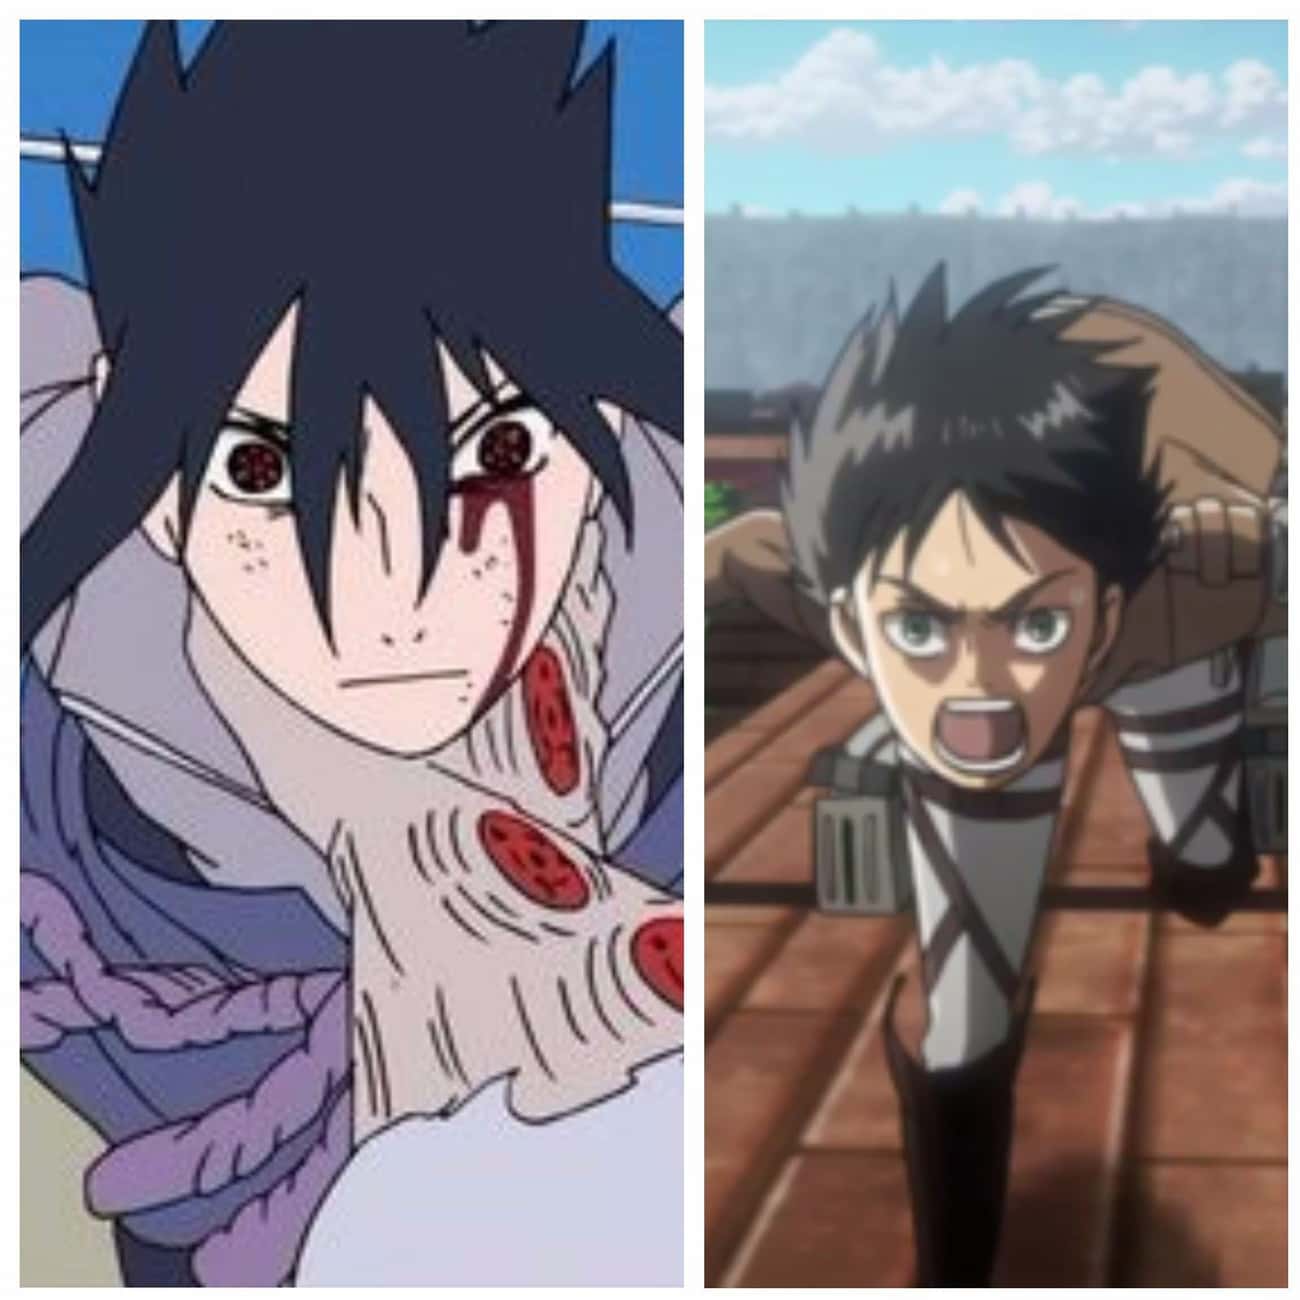 Sasuke Uchiha From Naruto And Eren Jaeger From Attack On Titan